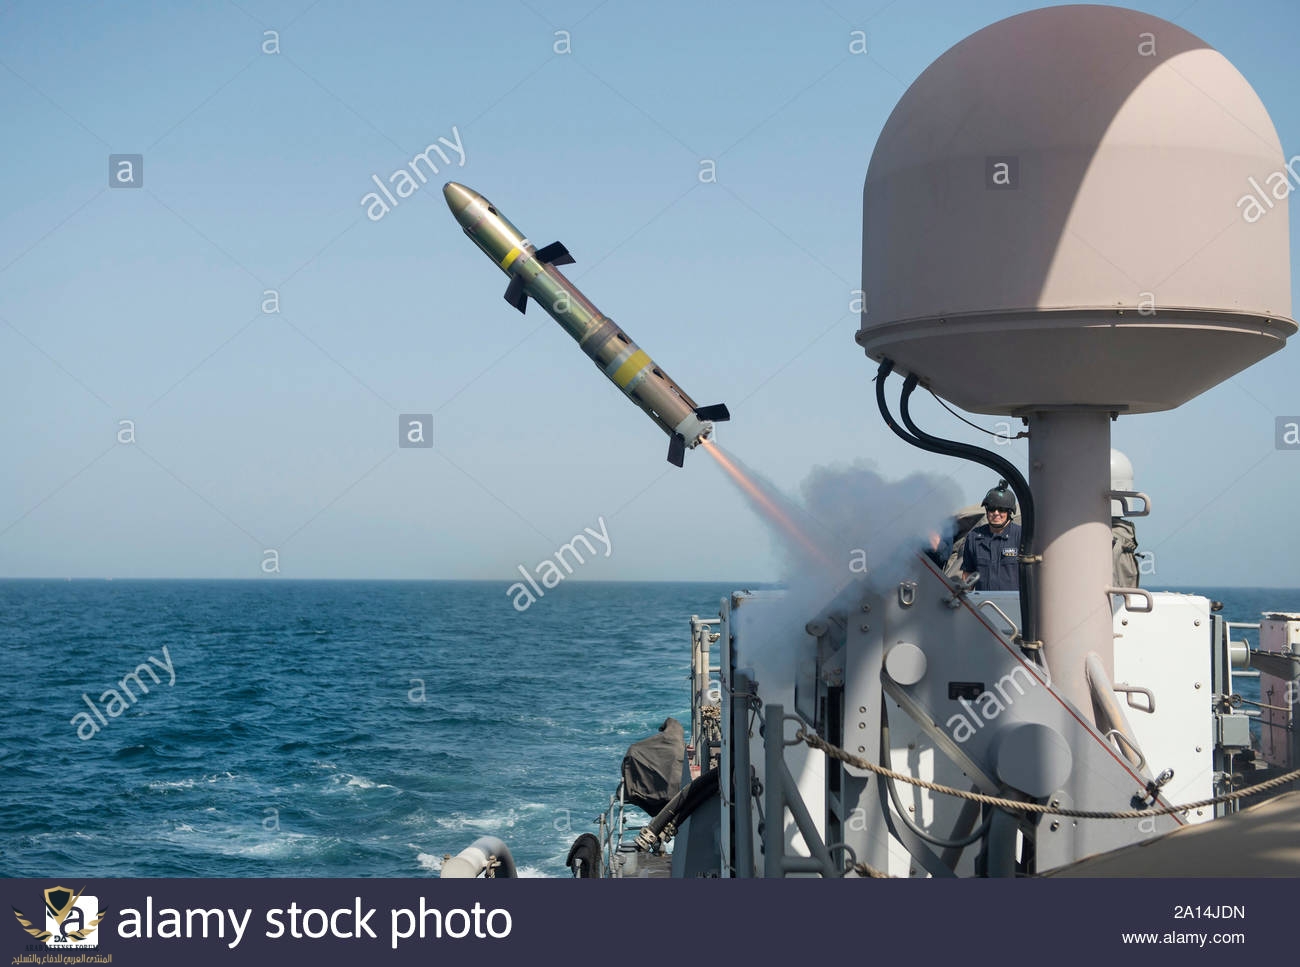 el-buque-uss-firebolt-patrulla-costera-dispara-un-misil-griffin-2a14jdn.jpg